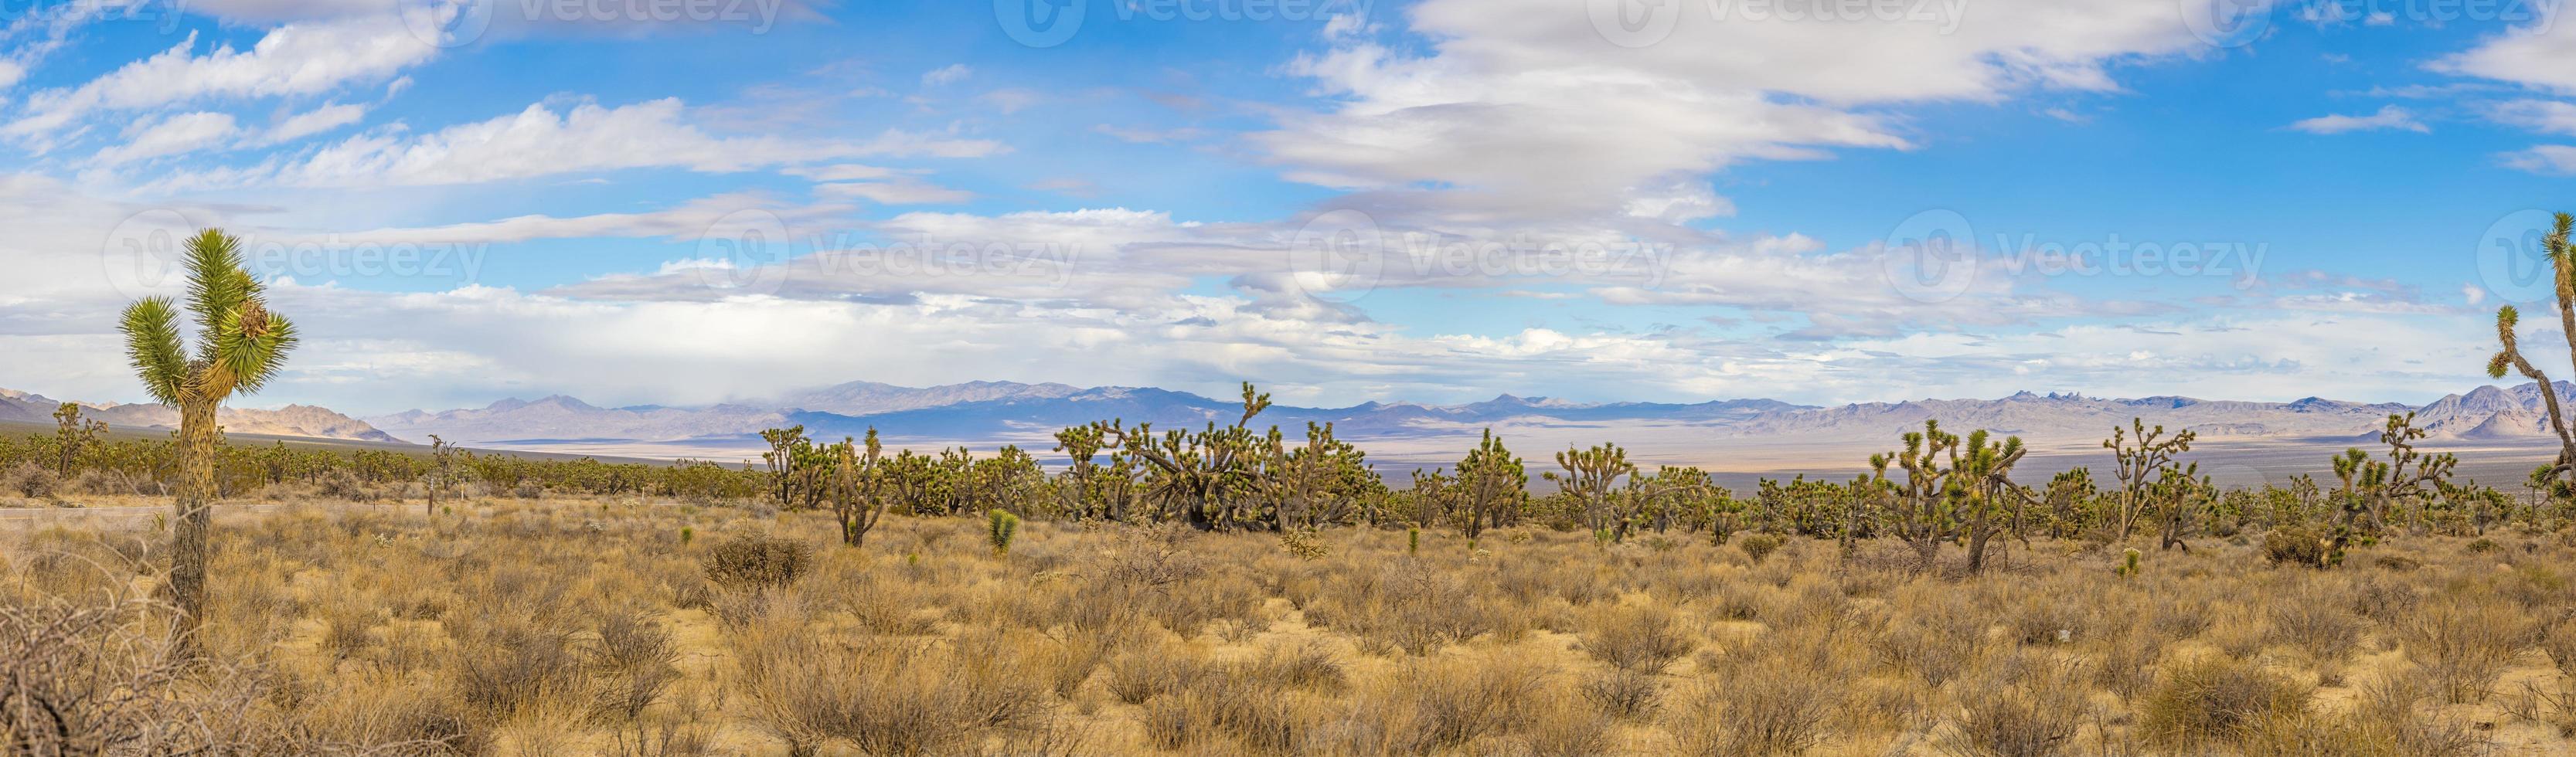 image panoramique sur le désert du sud de la californie avec des cactus pendant la journée photo